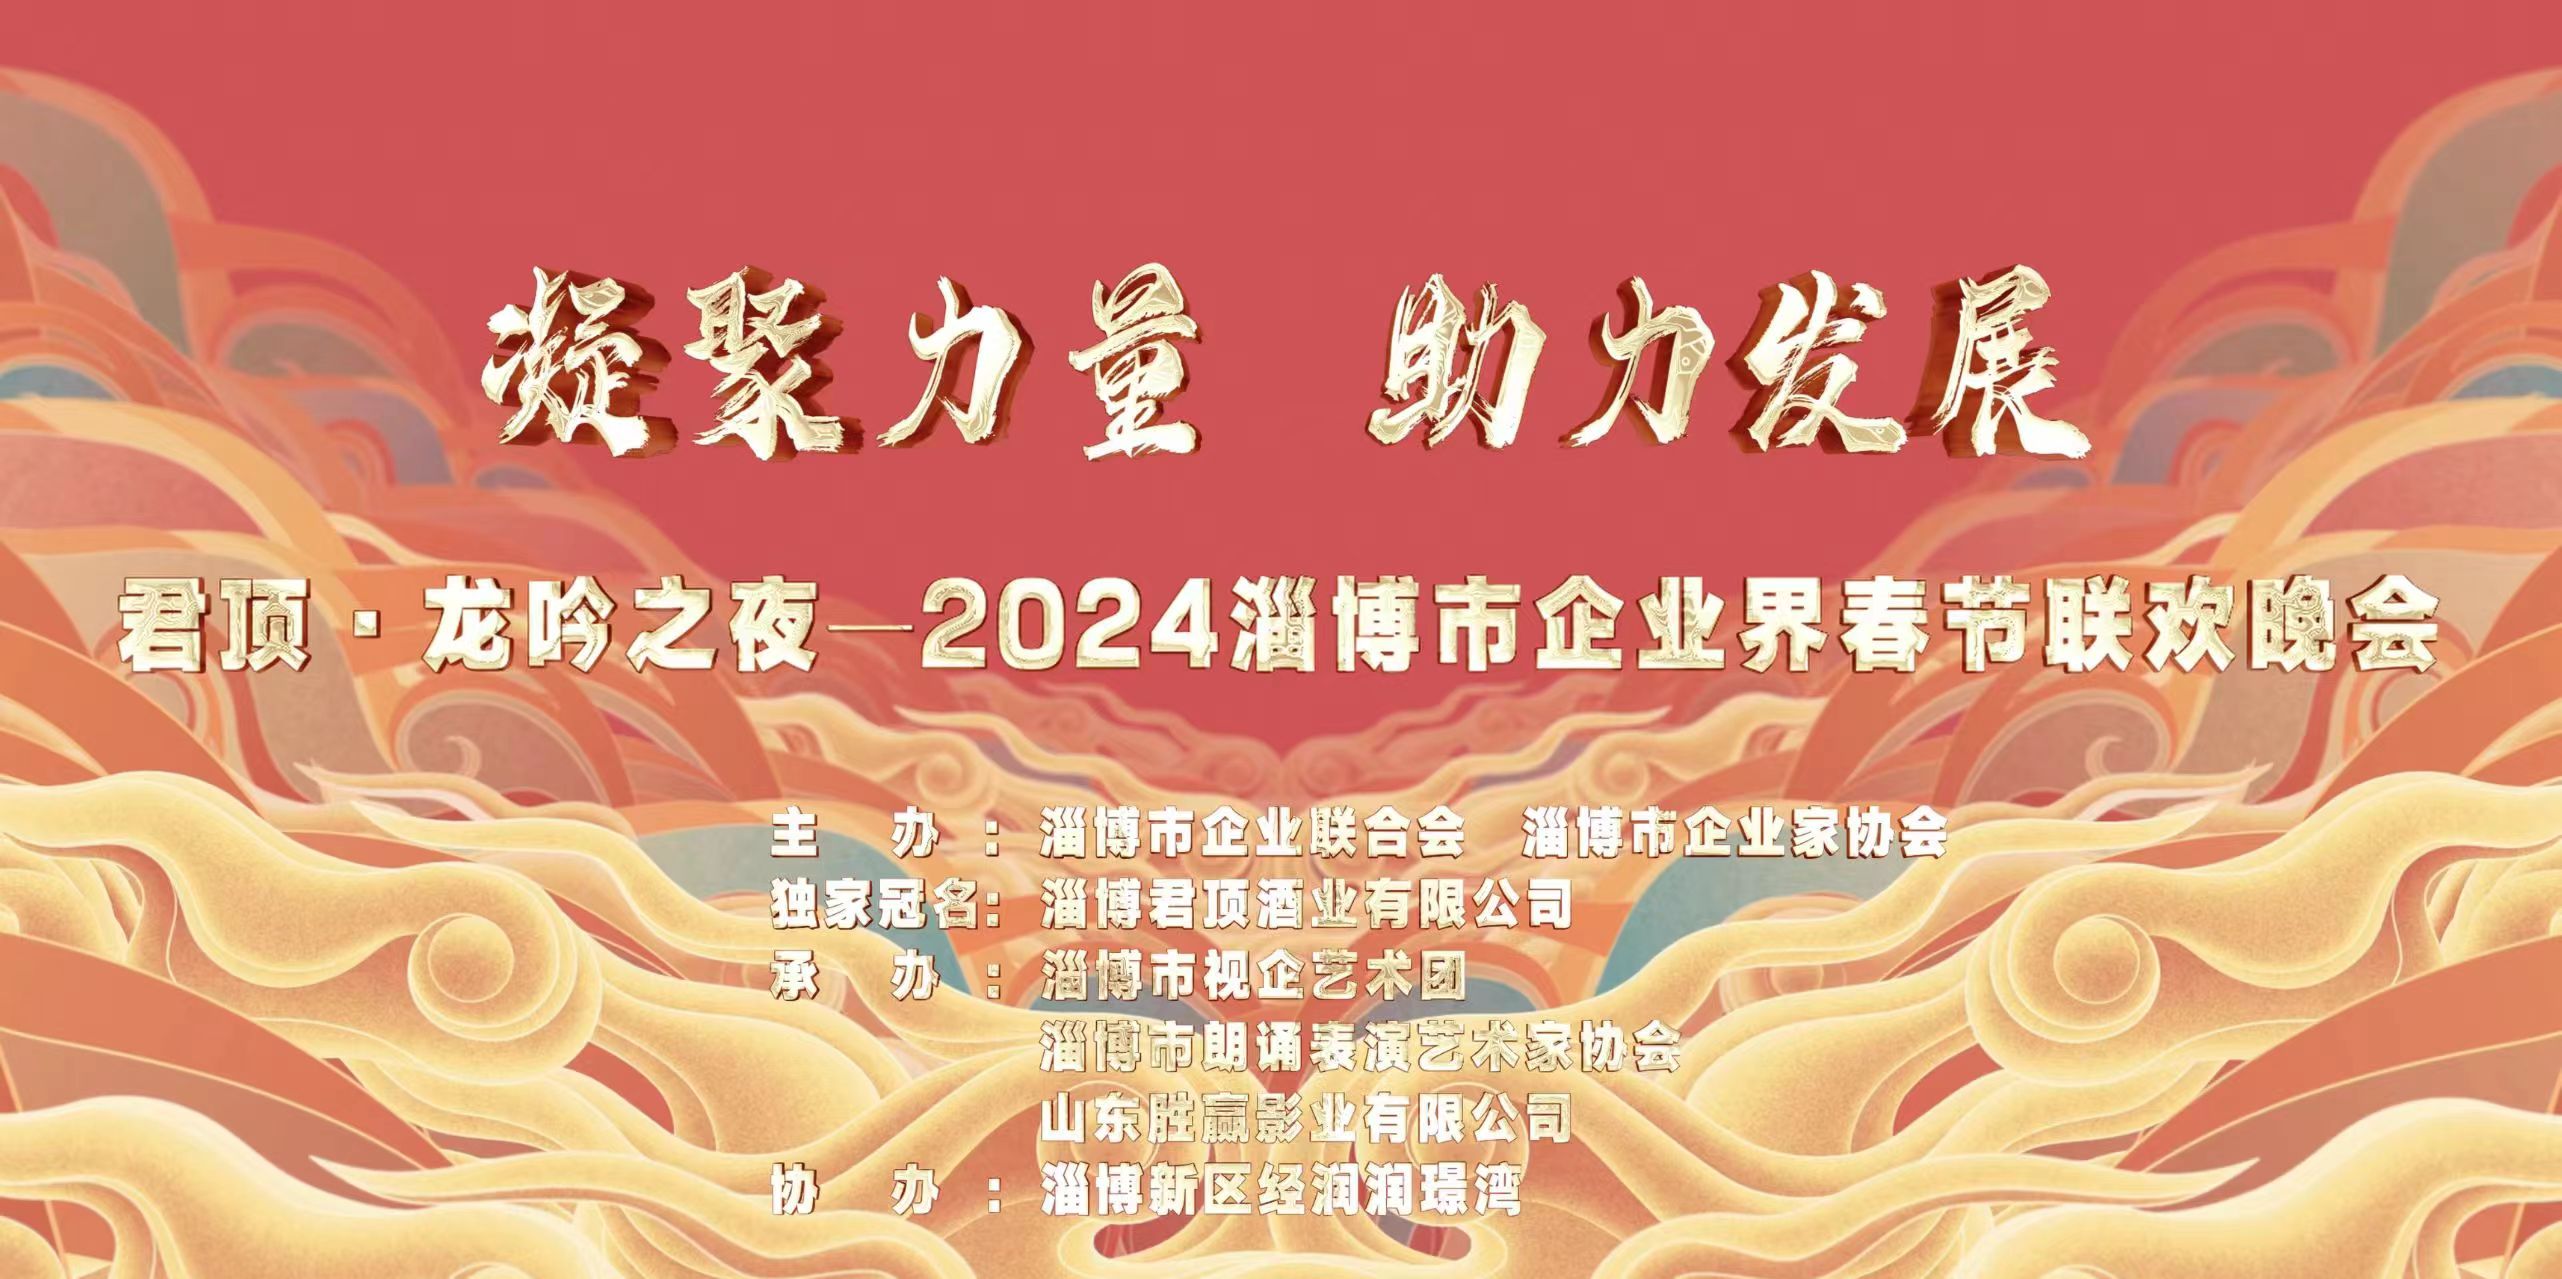 凝聚力量 助力发展丨君顶・龙吟之夜2024淄博市企业届春节联欢晚会成功举办！